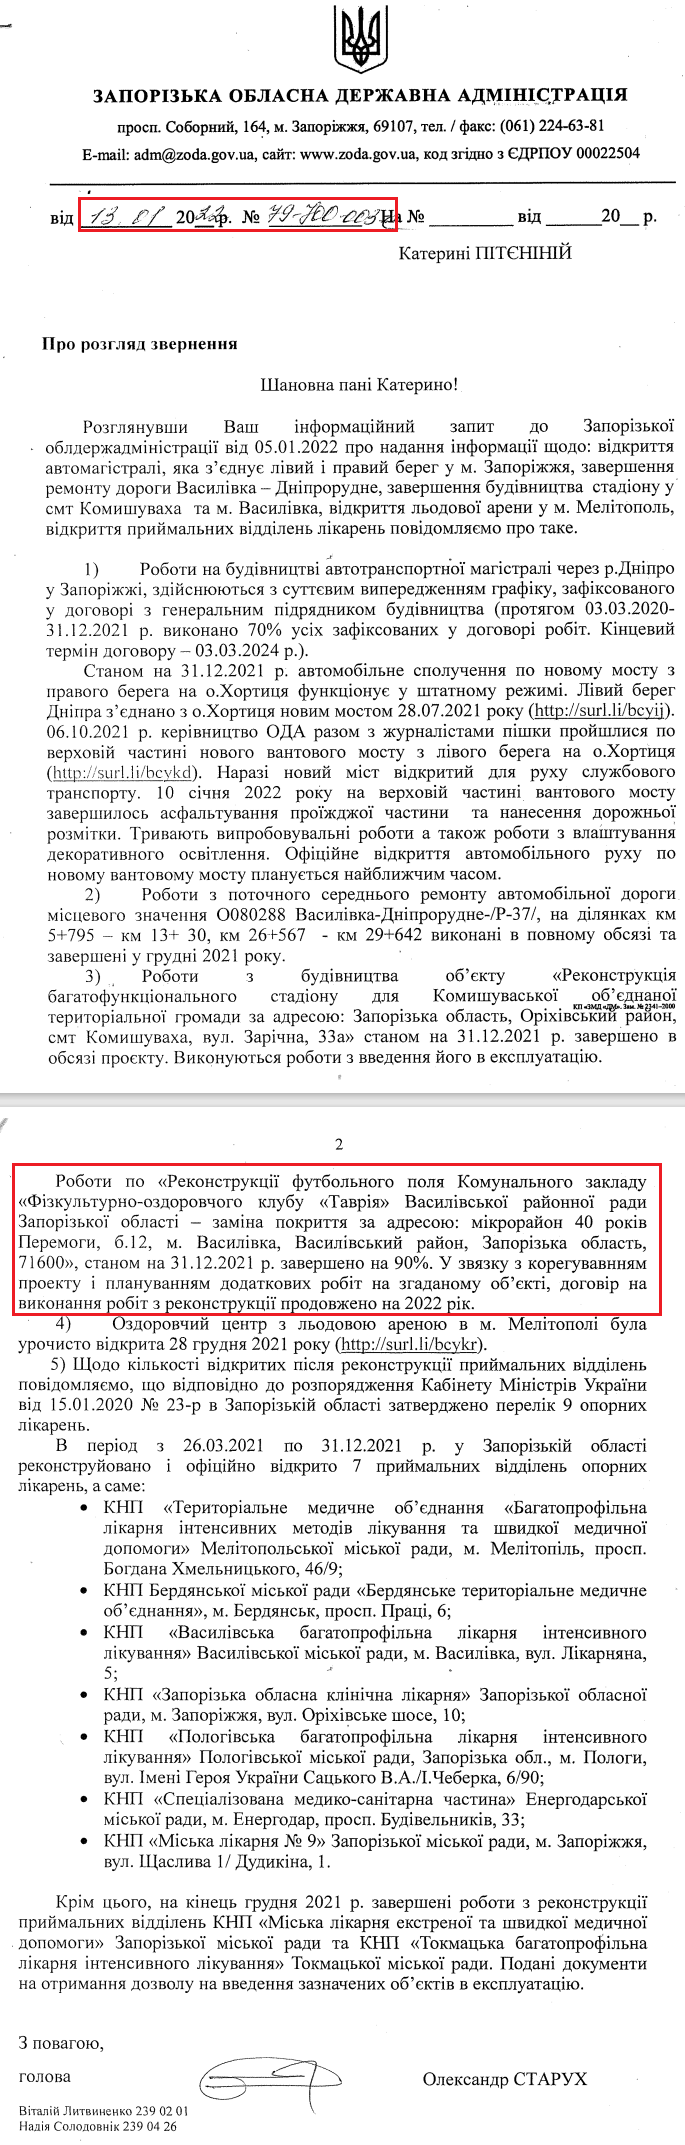 Лист Запорізької обласної державної адміністрації від 13 січня 2022 р.